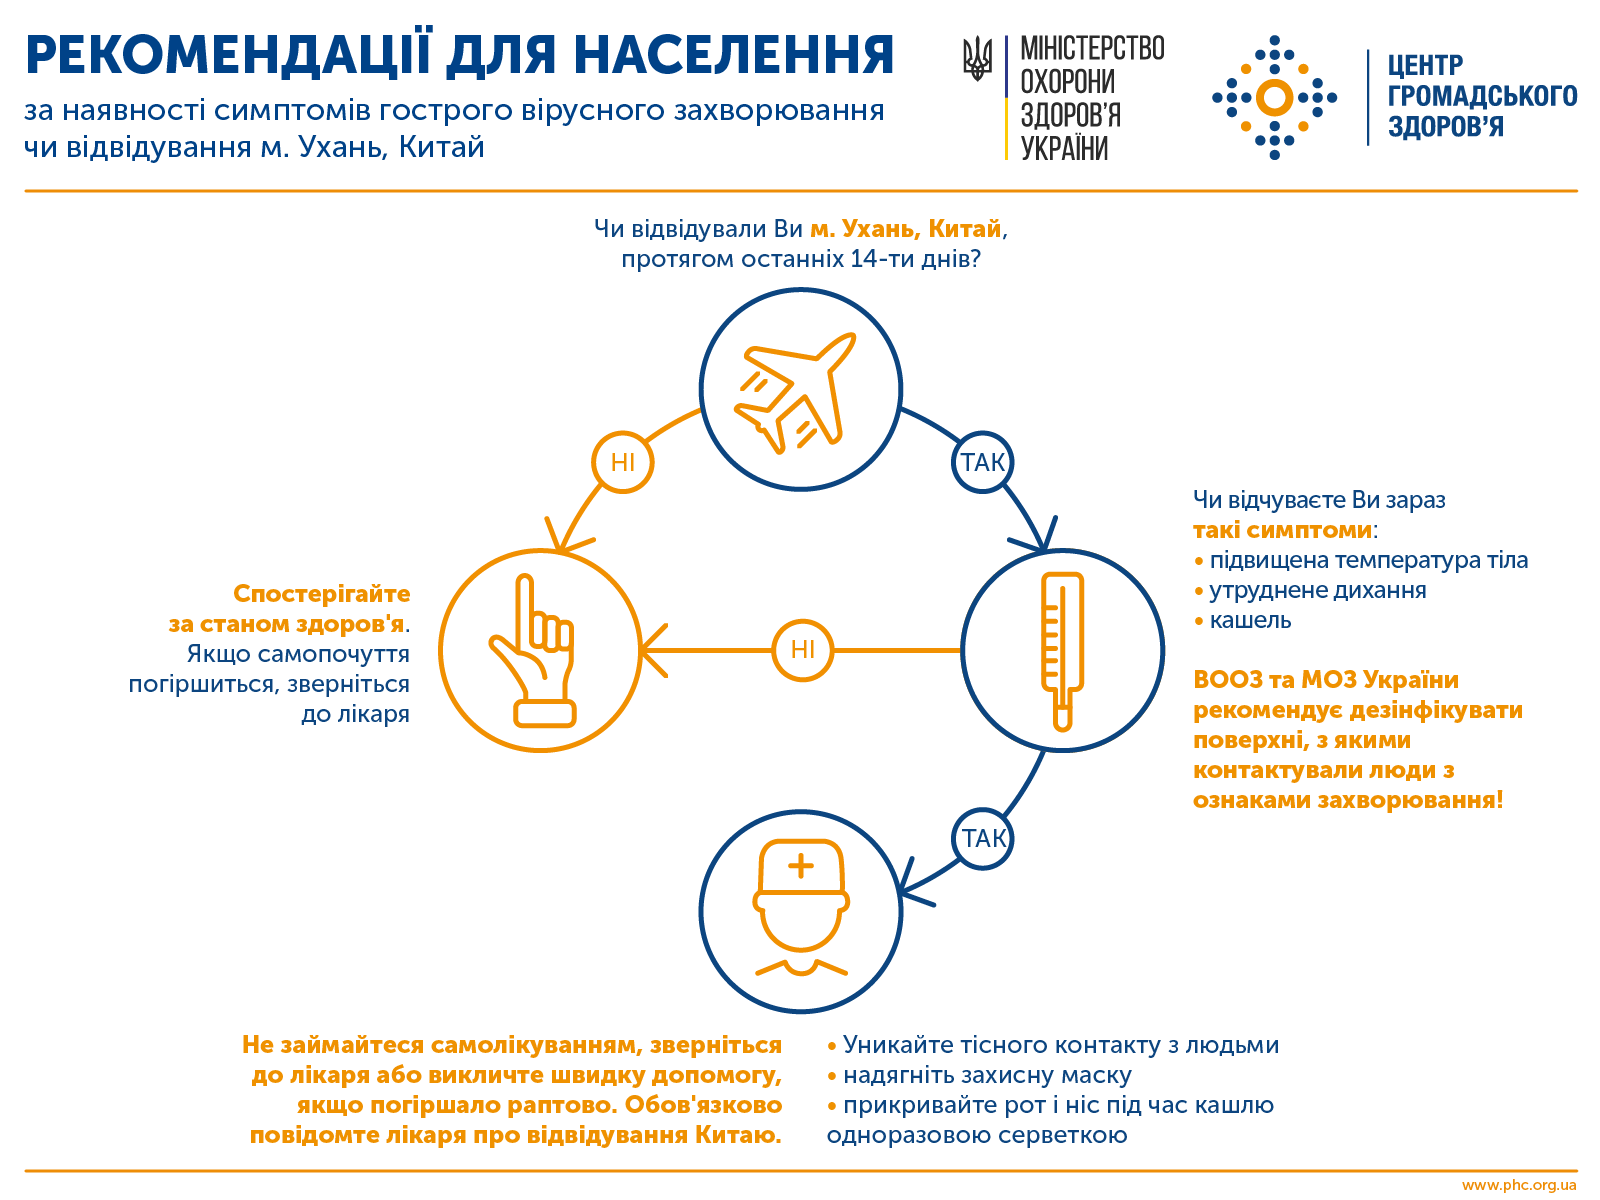 Поширення нового коронавірусу: надзвичайна ситуація ВООЗ і рівень готовності України 